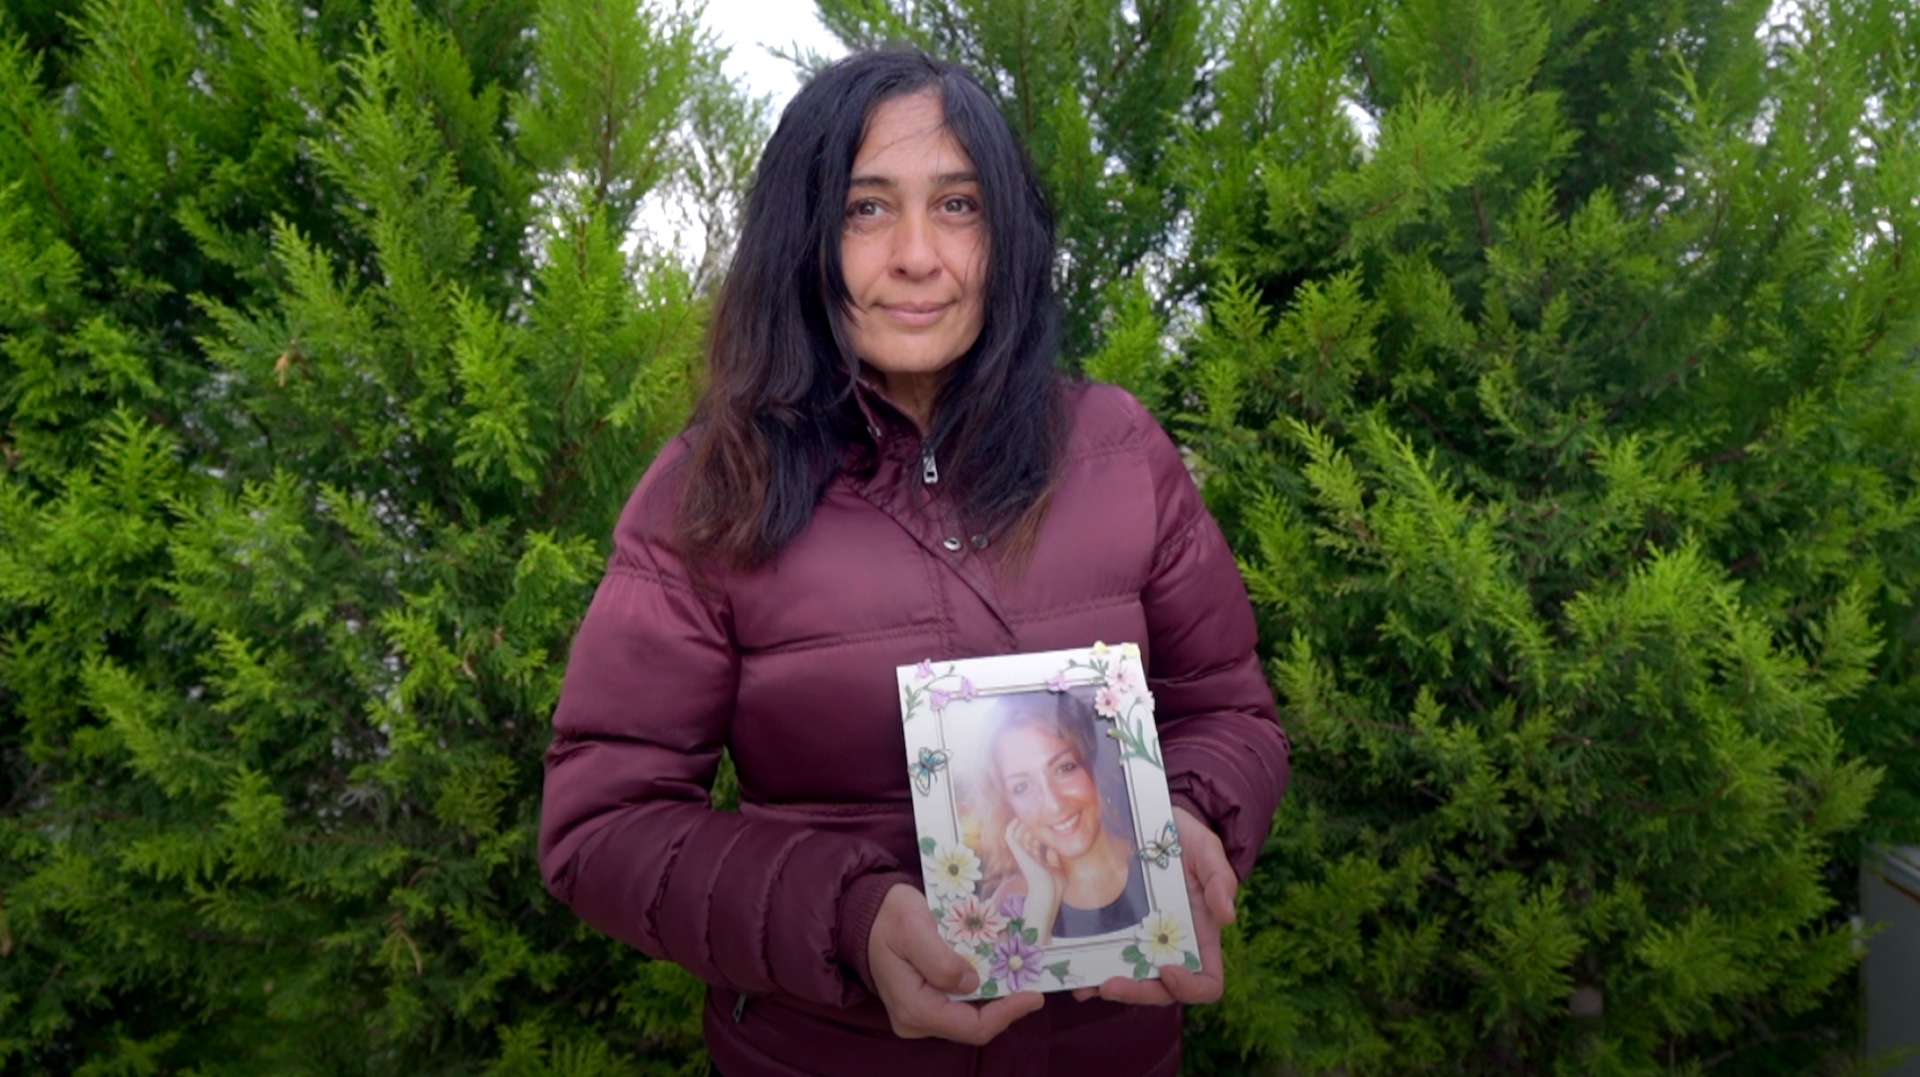 Sevgi, uma mulher turca de cabelos pretos, segura uma foto de uma mulher jovem